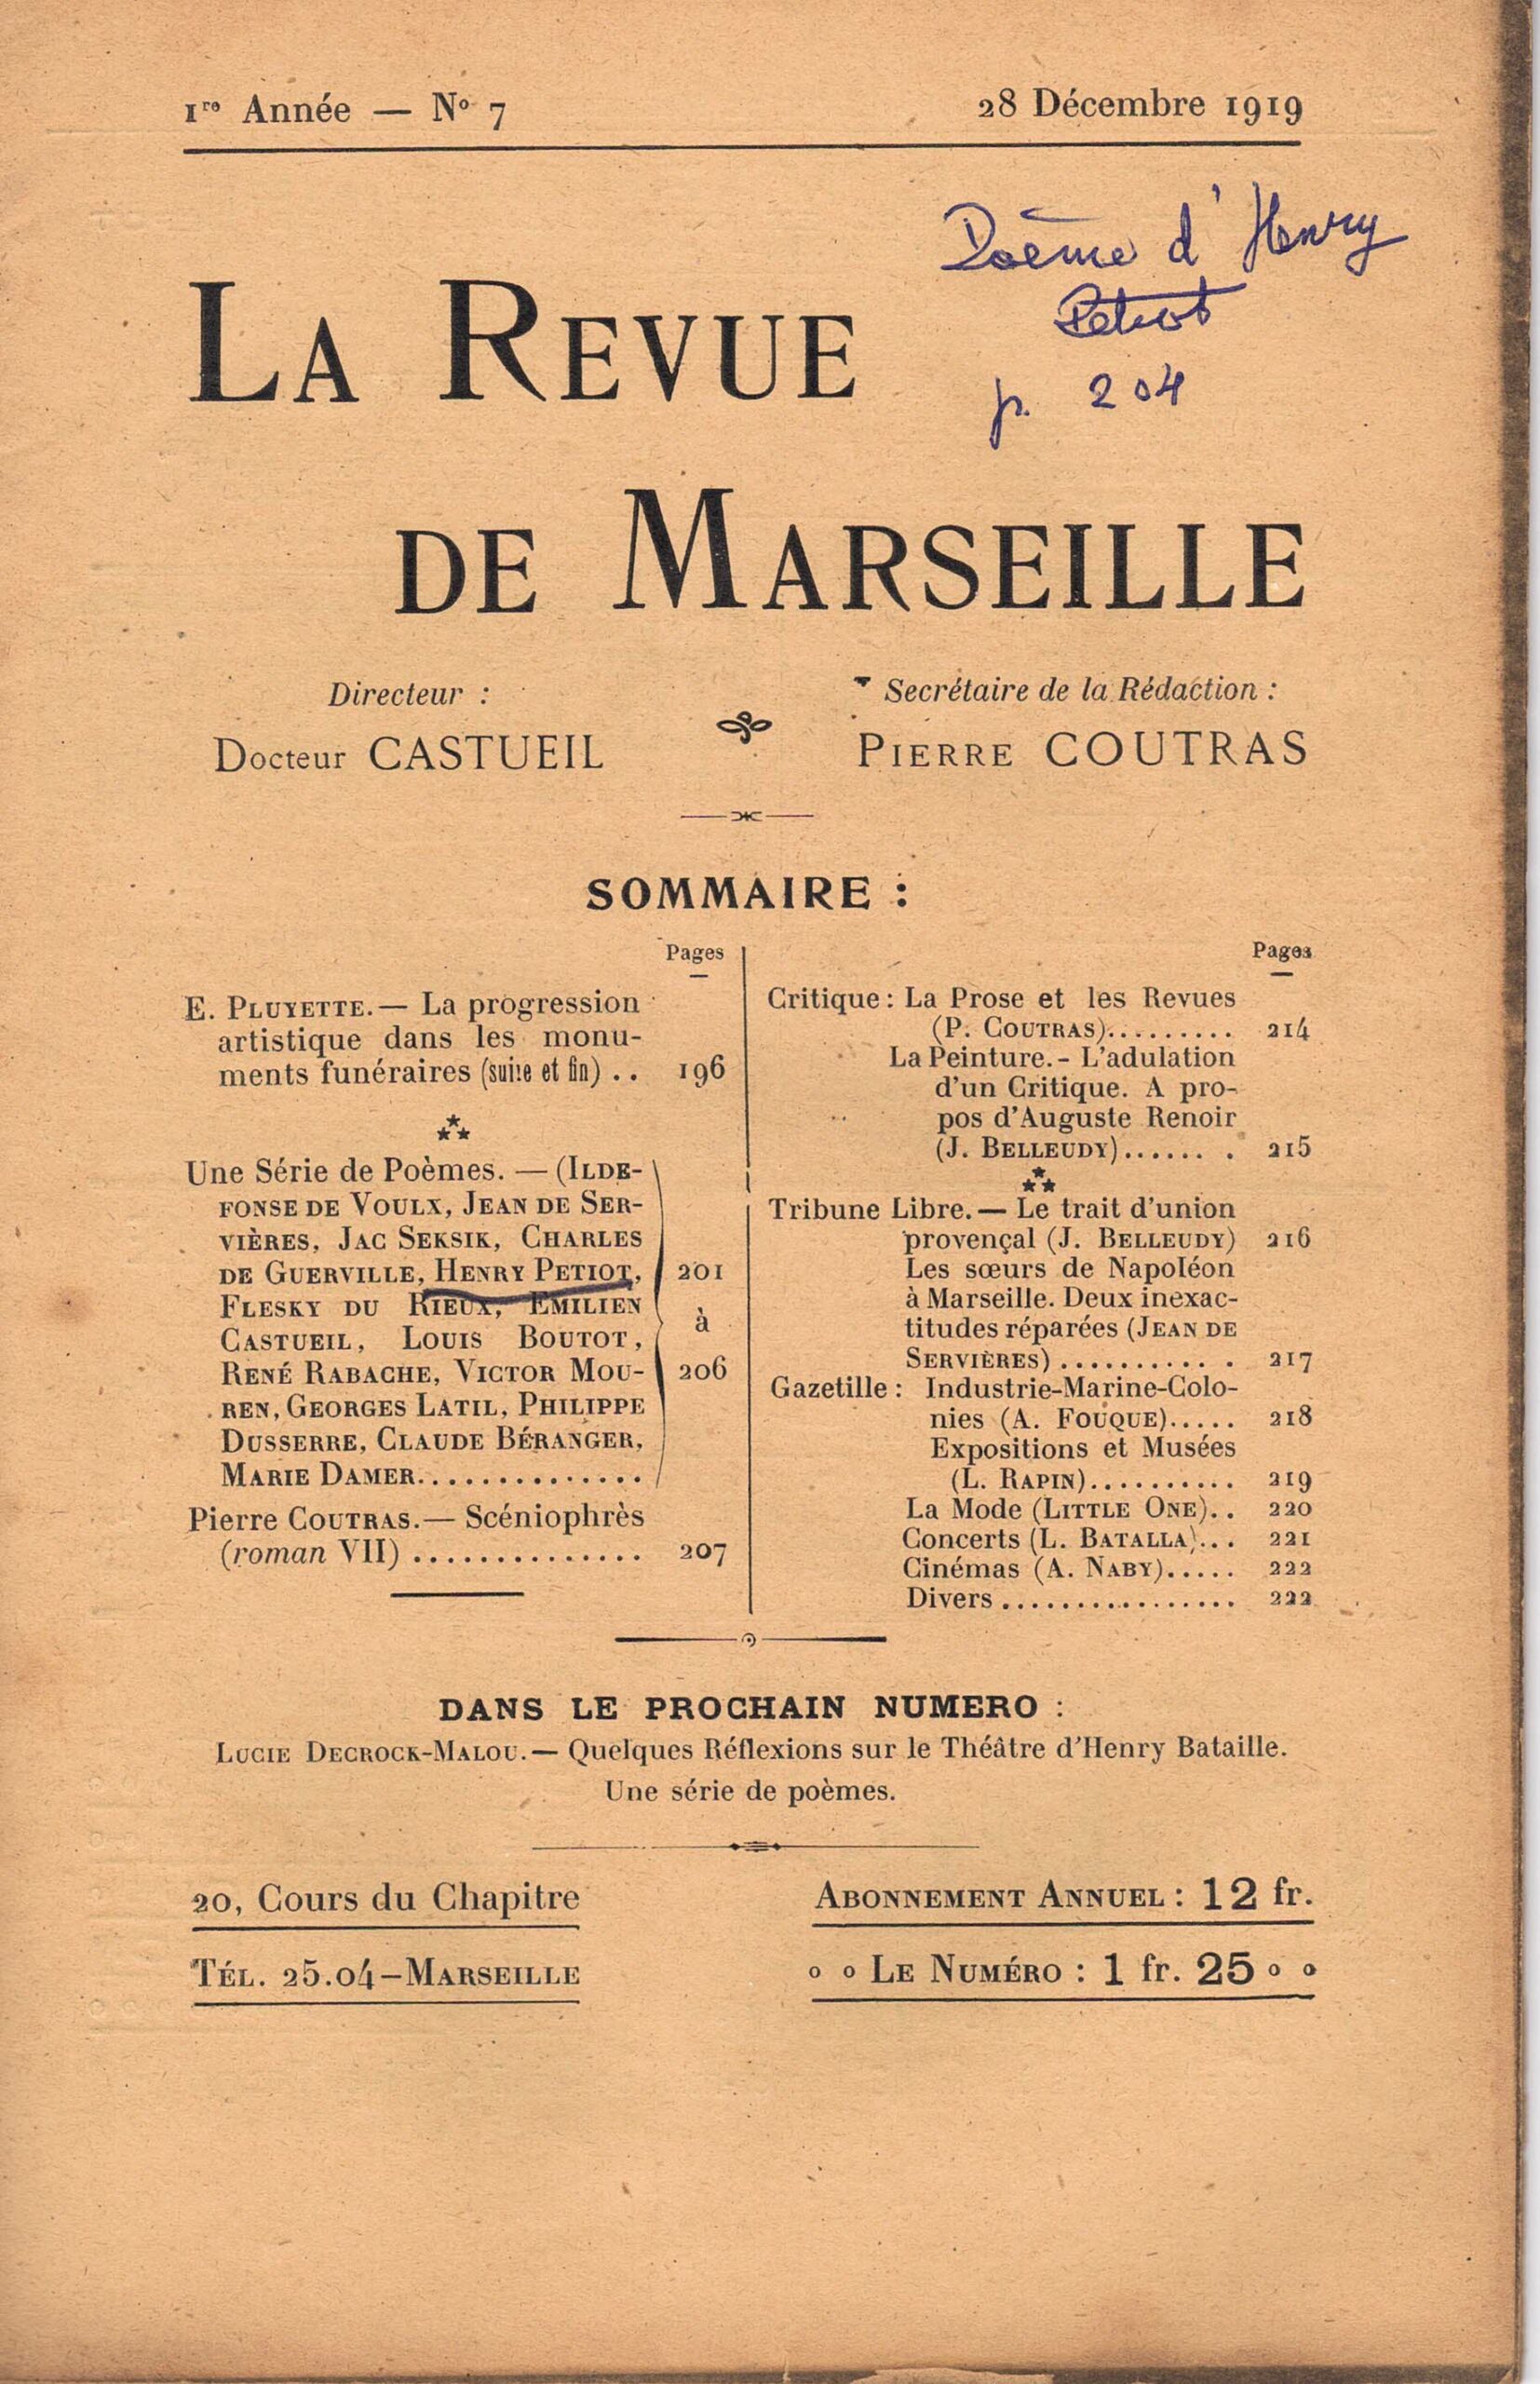 1919 12 28 La Revue de Marseille numéro 7 couverture